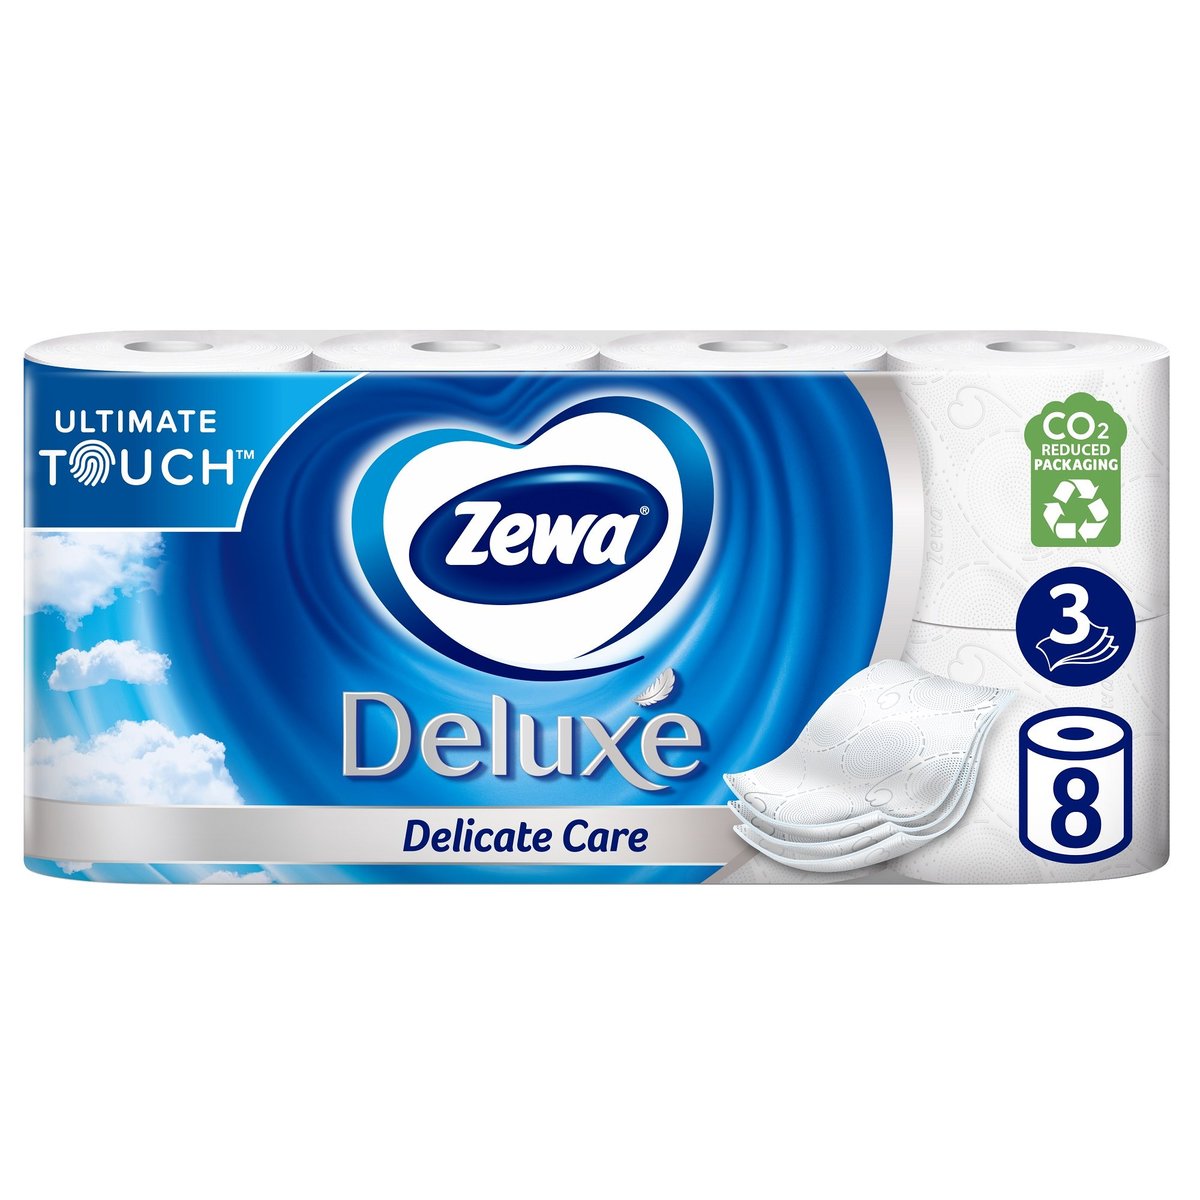 Zewa Deluxe Delicate Care toaletní papír 3vrstvý, 8 ks